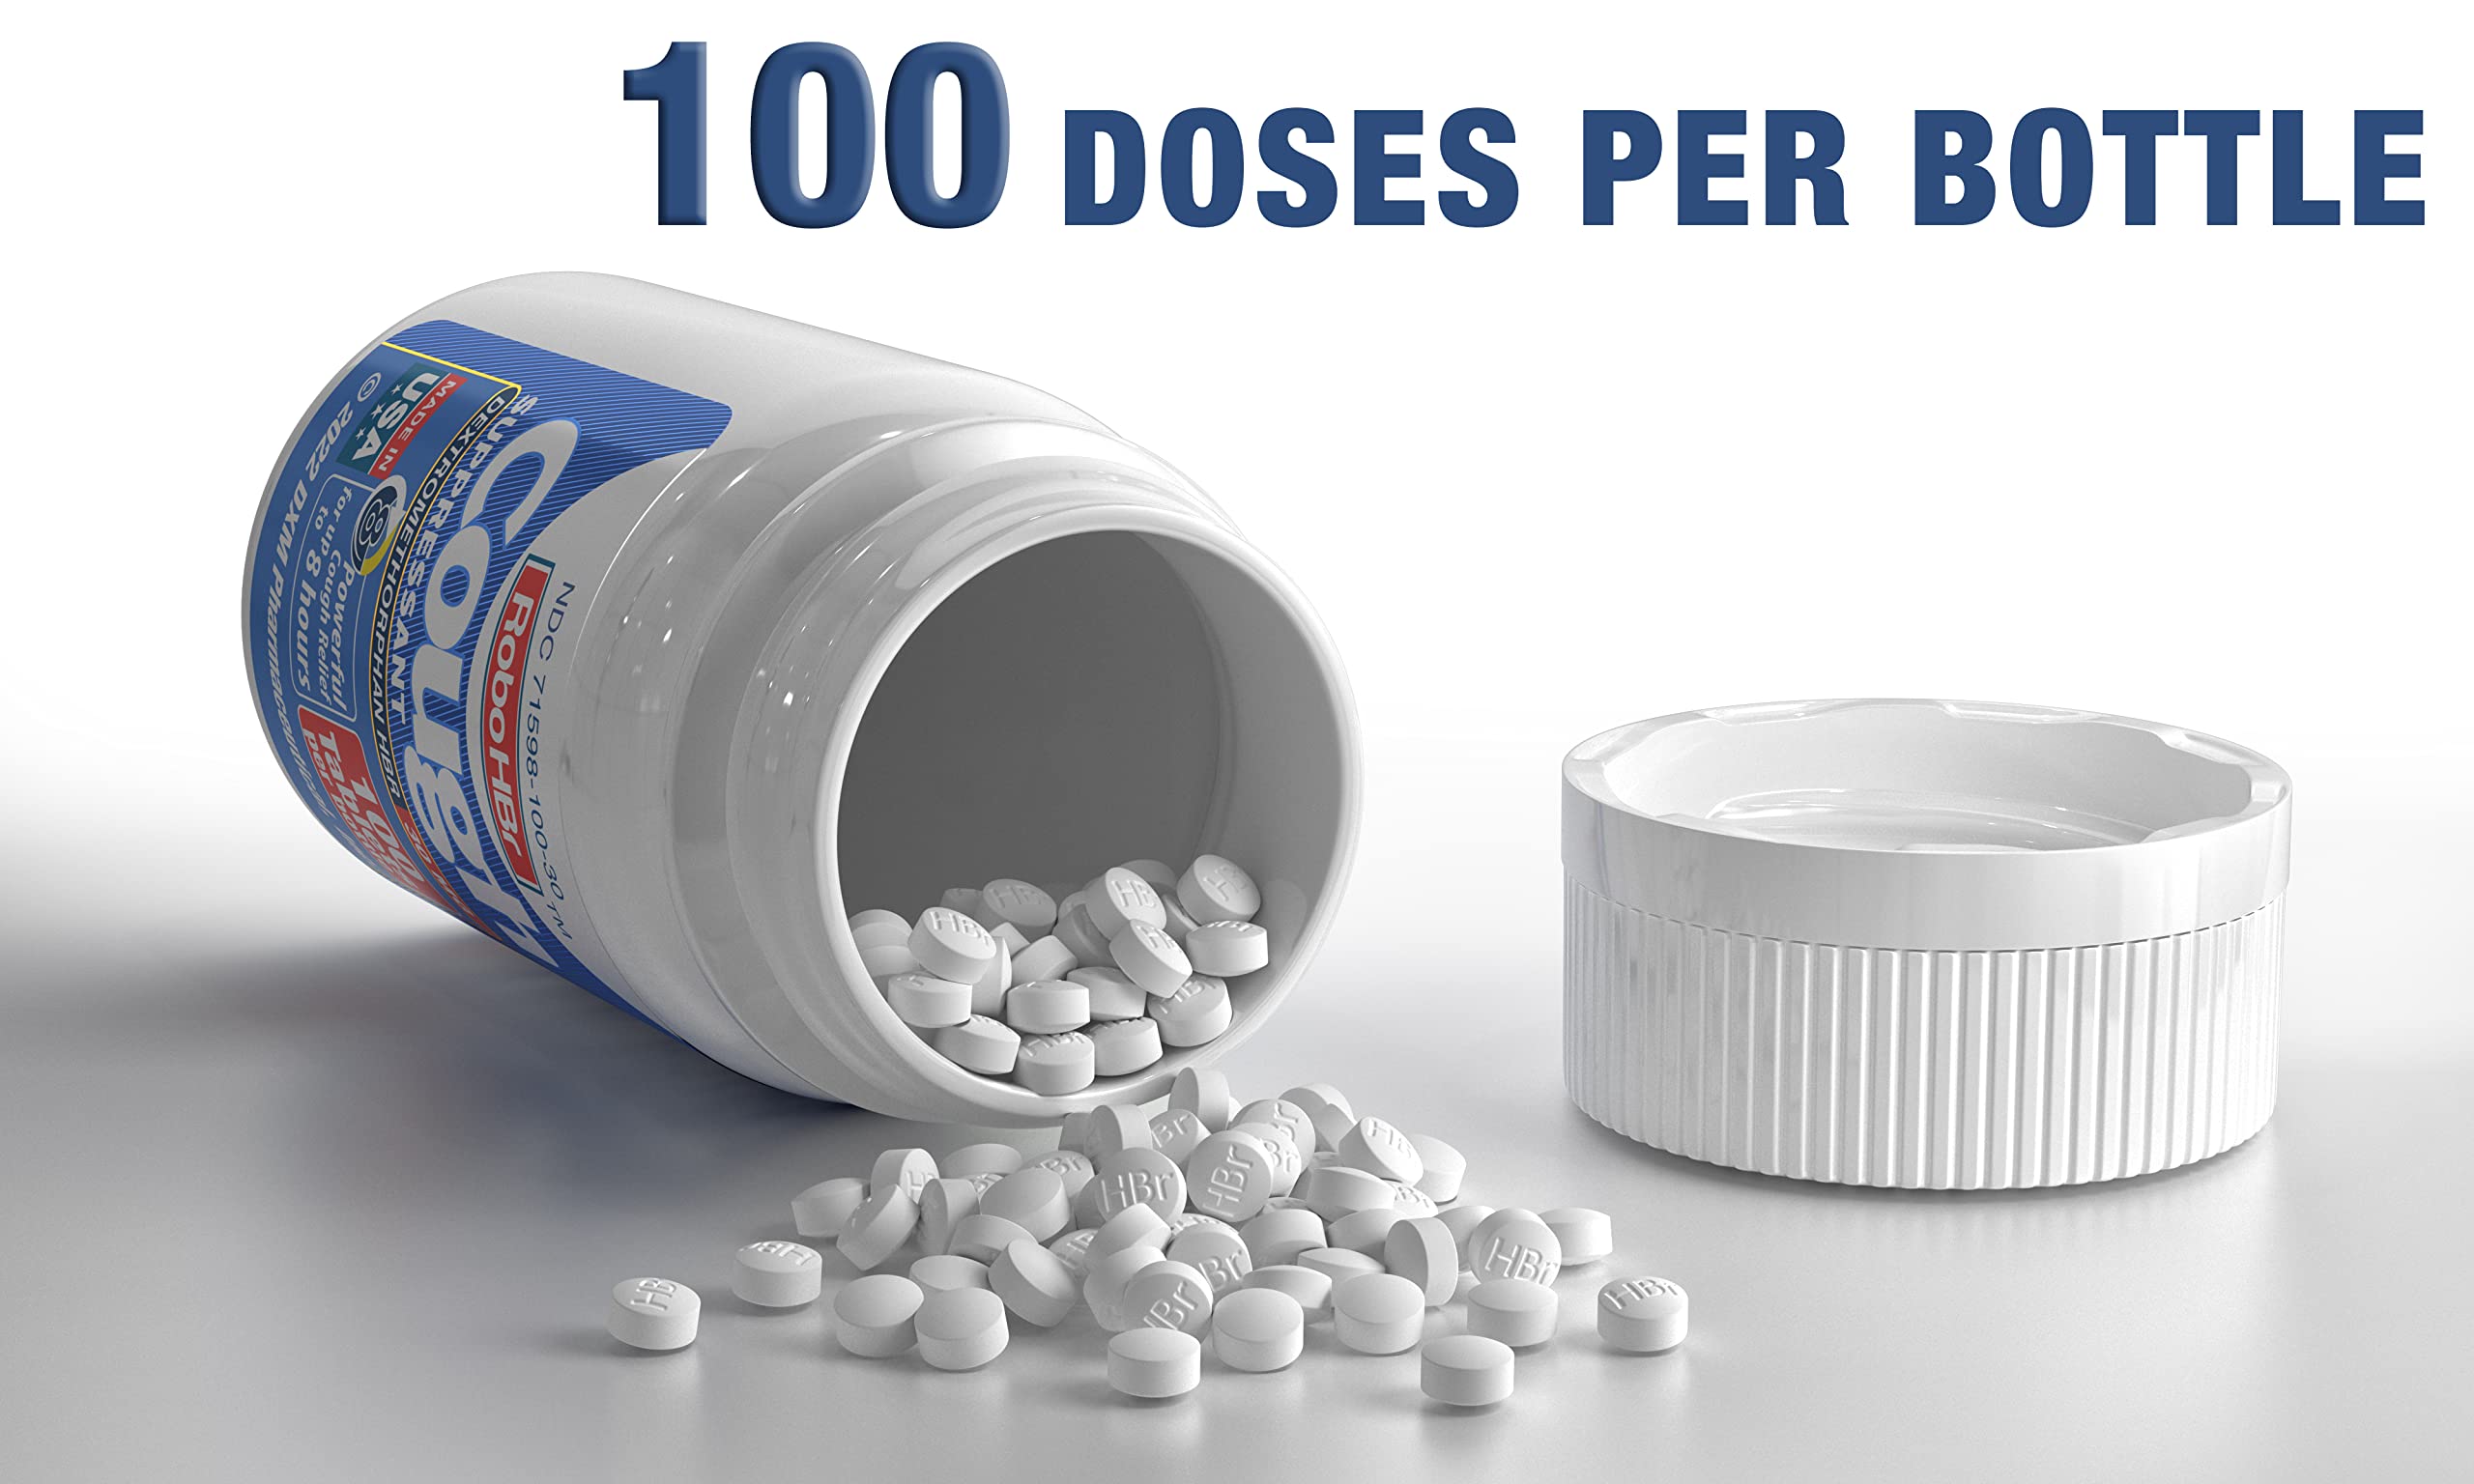 RoboHBr Cough suppressant, Dextromethorphan HBr 30 mg, 100 Tablets, 100 Doses